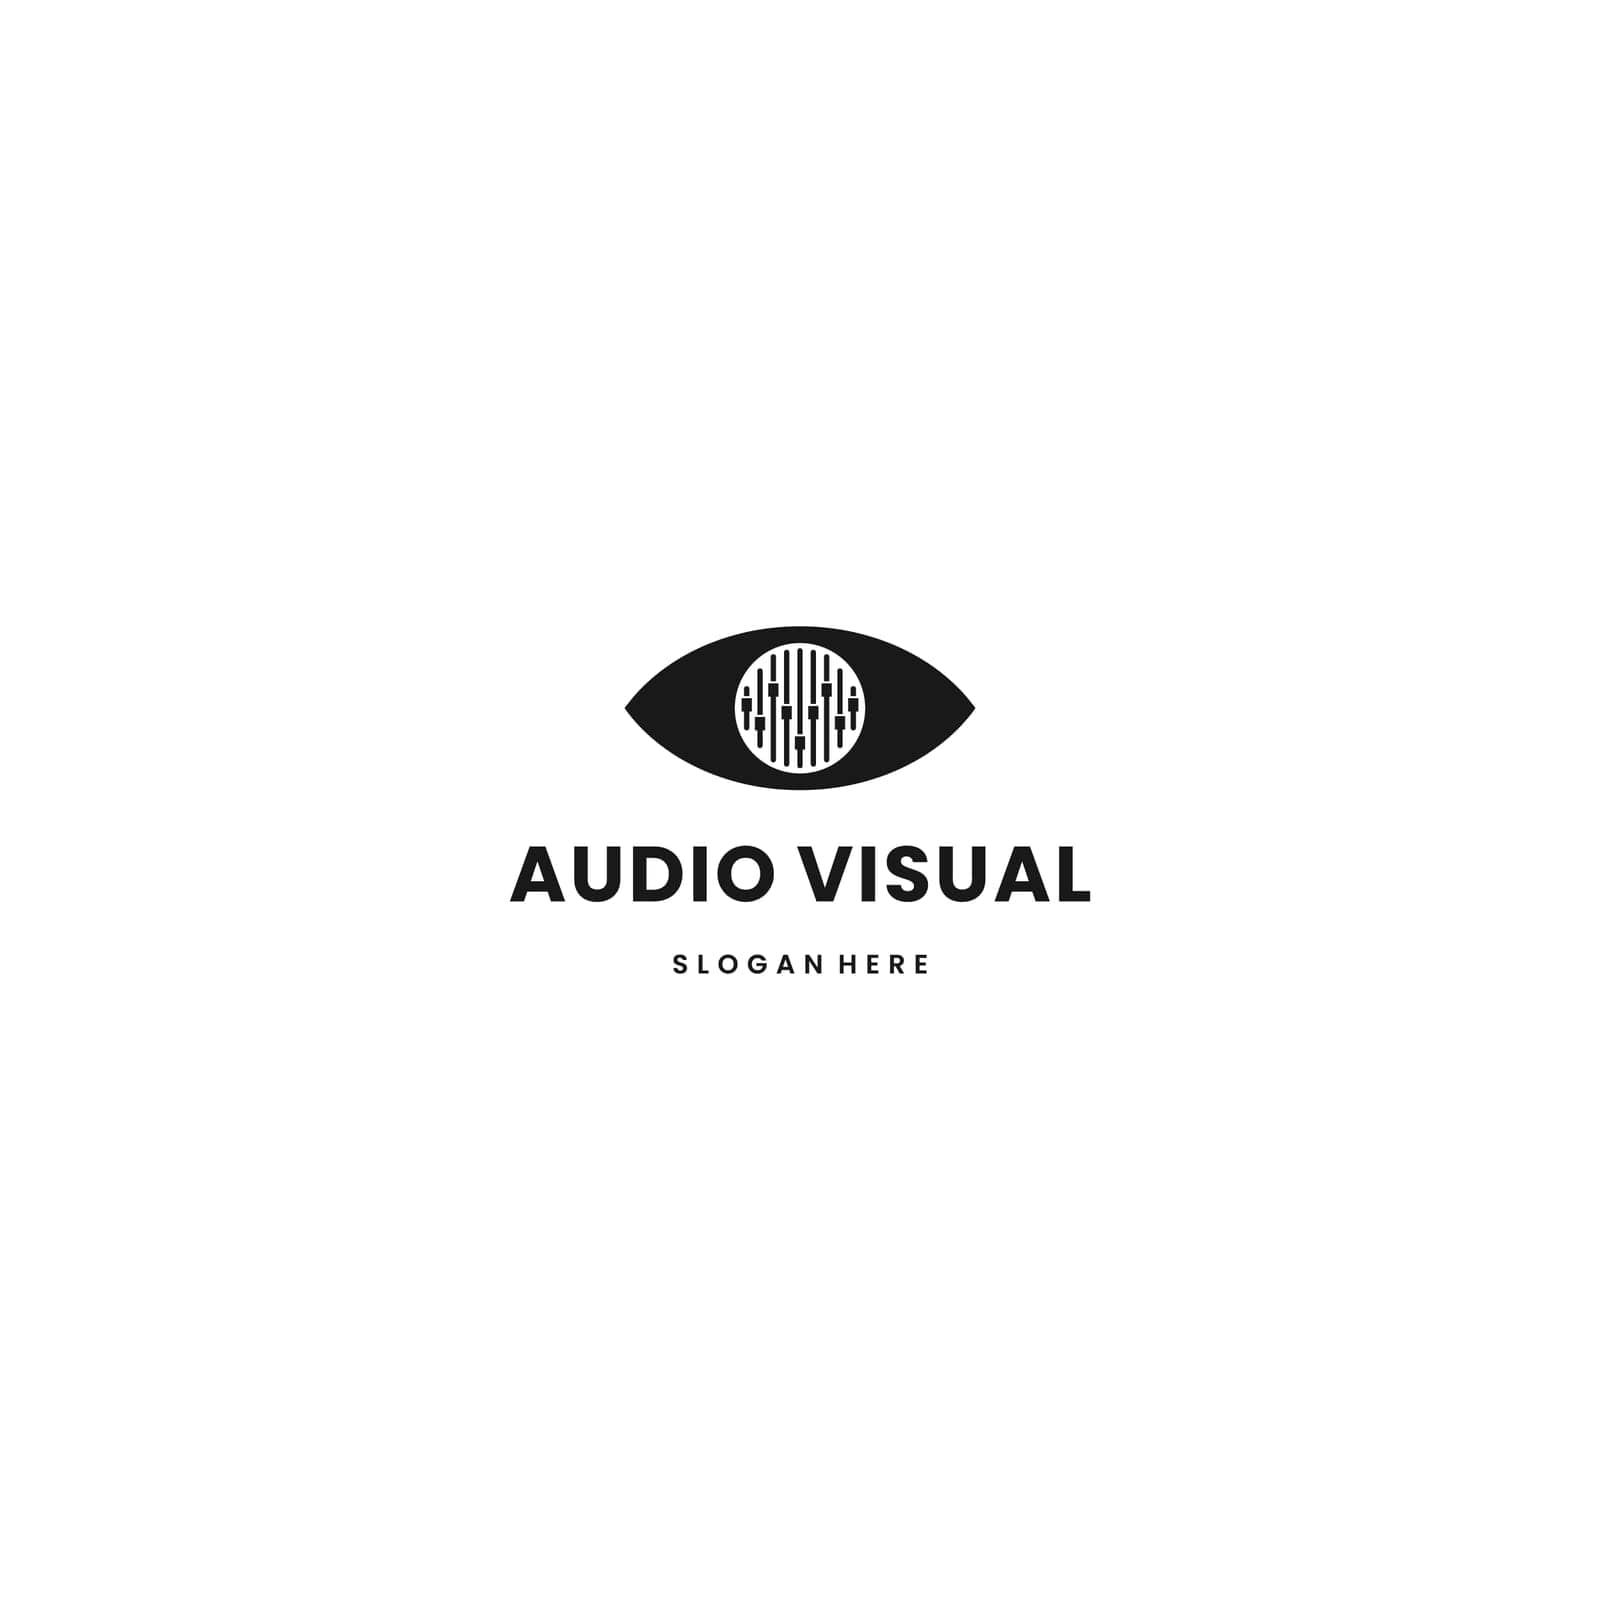 Audio visual logo design on isolated background